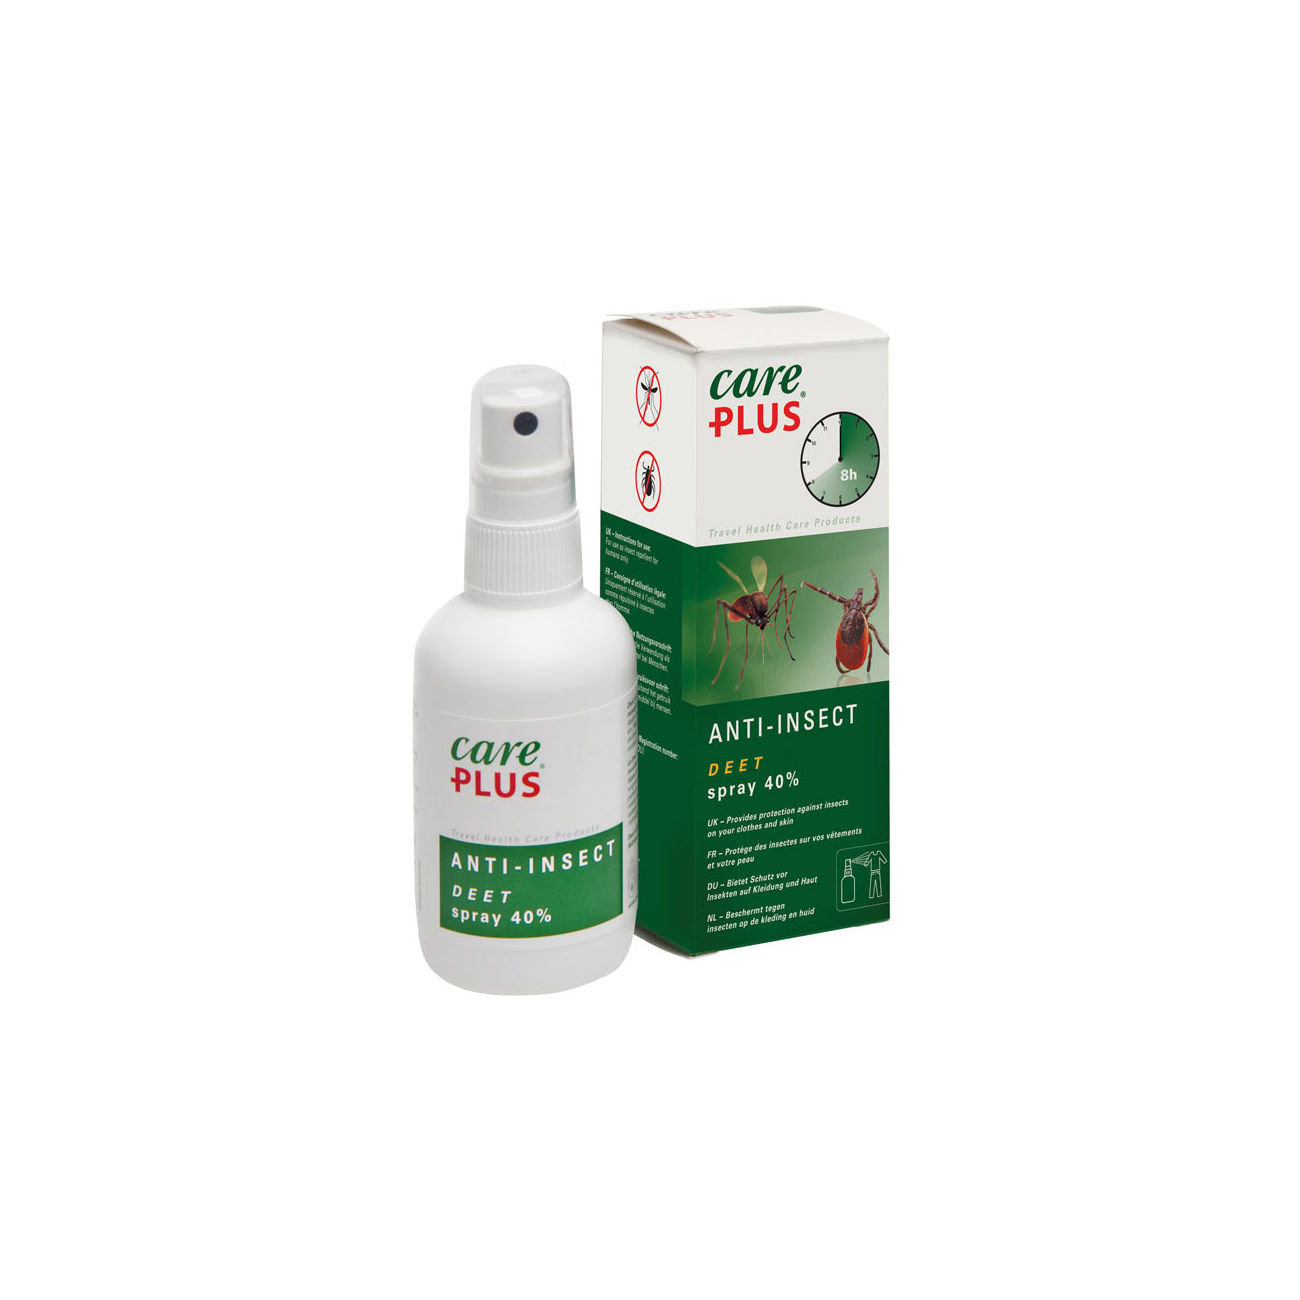 Care Plus Insektenspray Ani-Insect Deet 60 ml zur Abwehr von Insekten